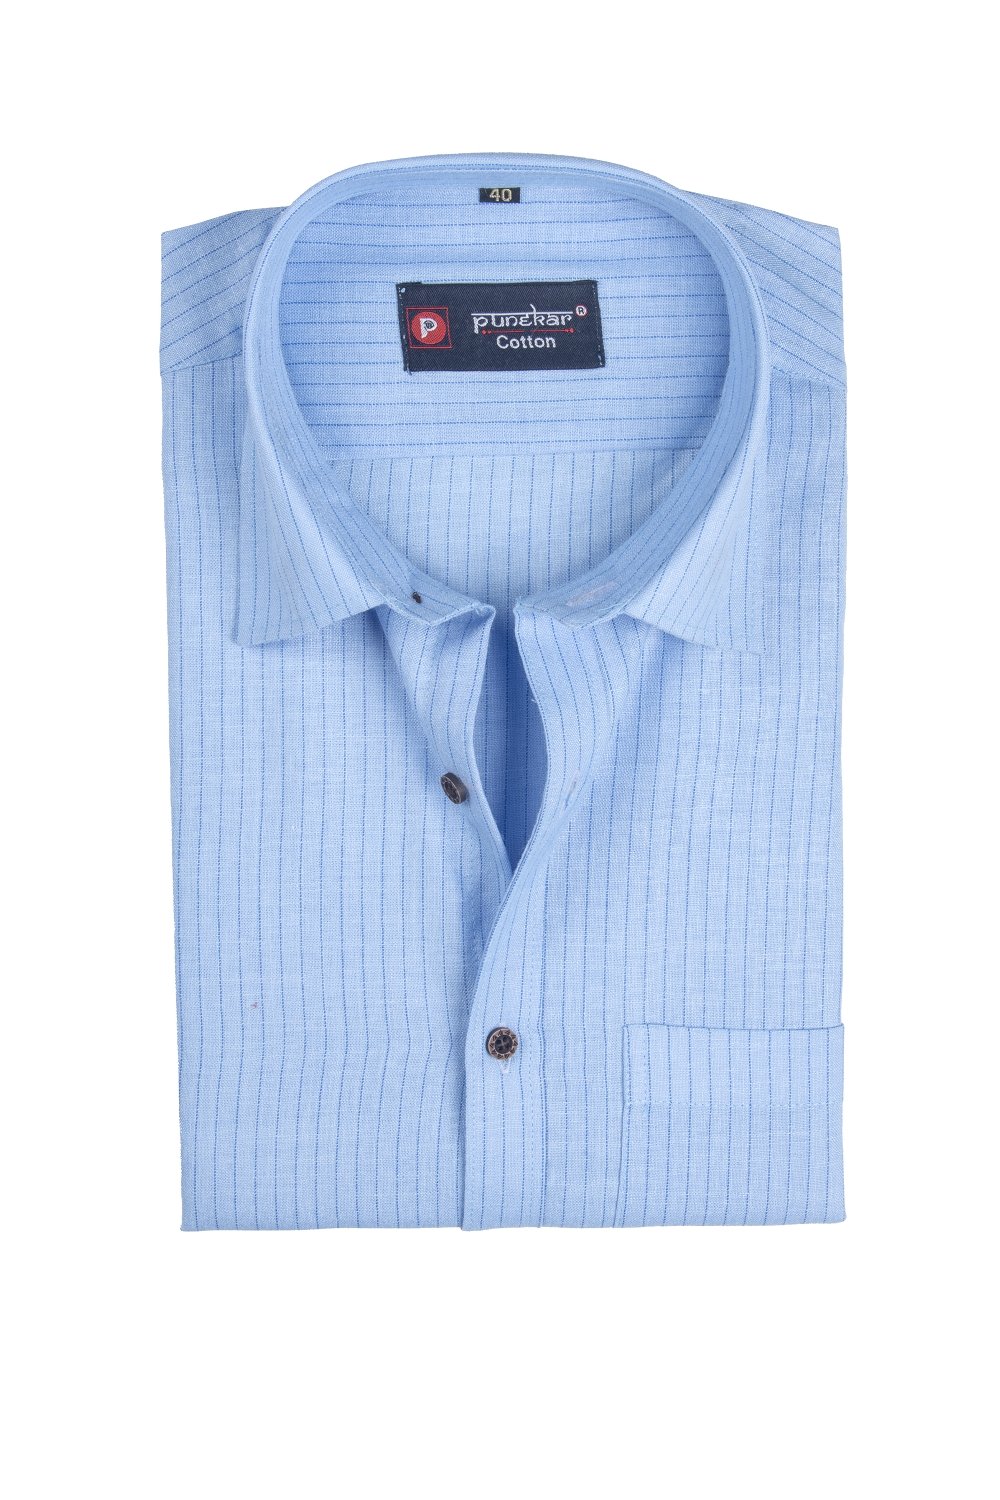 Punekar Cotton Light Blue Color Linning Criss Cross Woven Cotton Shirt for Men&